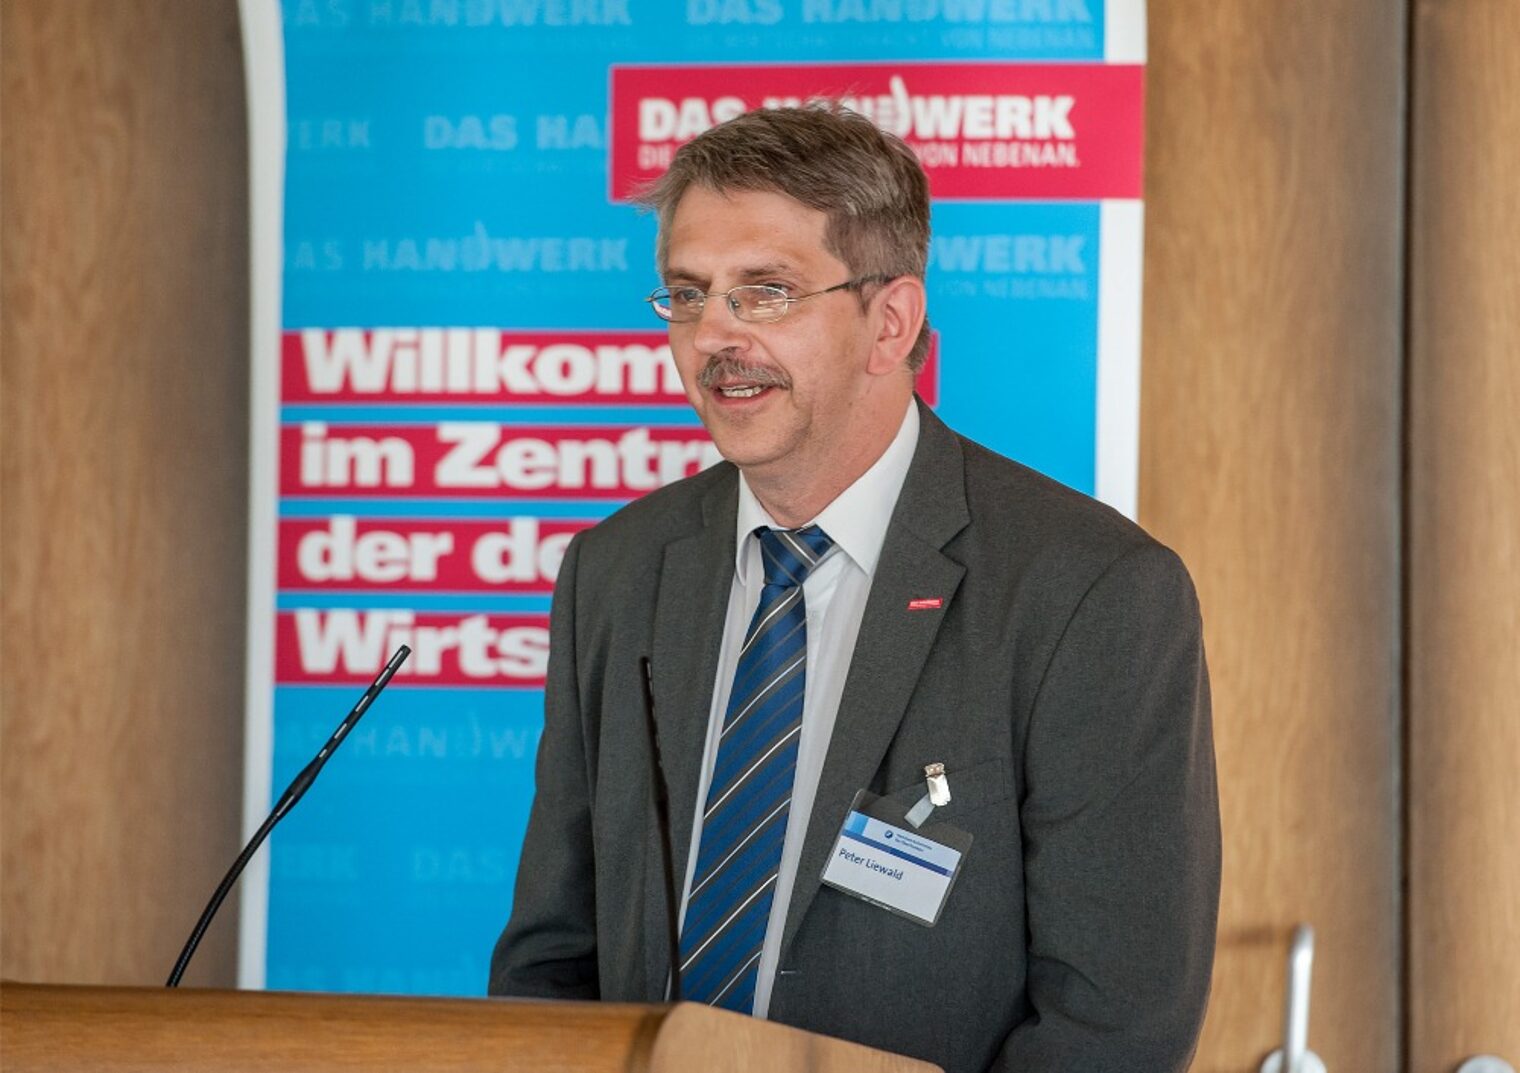 Peter Liewald, Ausbildungsakquisitör von der HWK Bayreuth